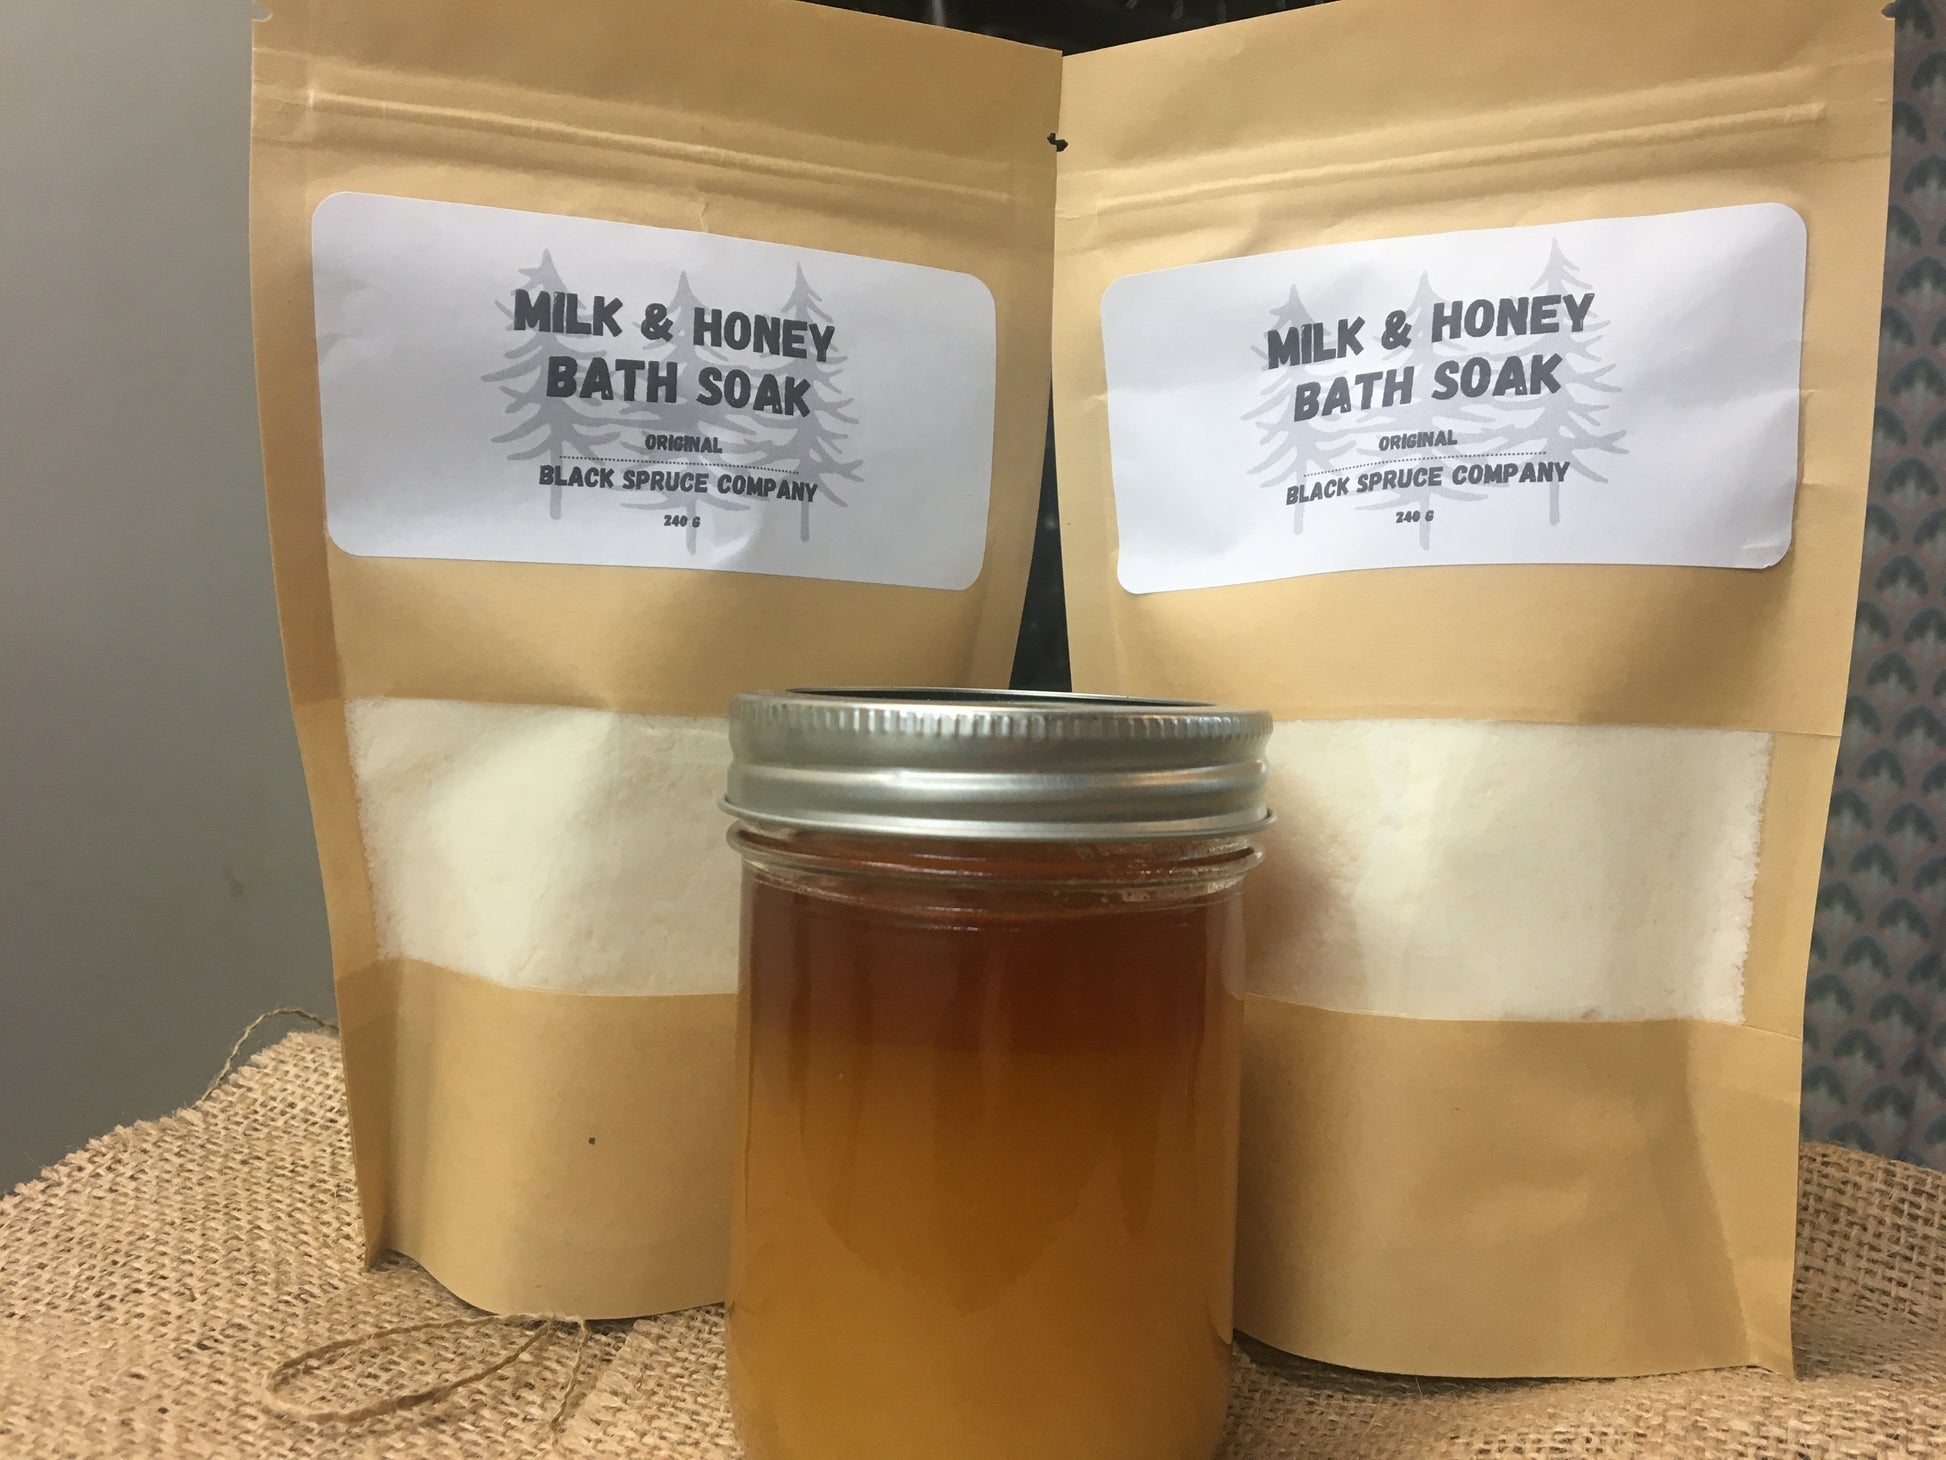 Milk and Honey Bath Soak Original in bag